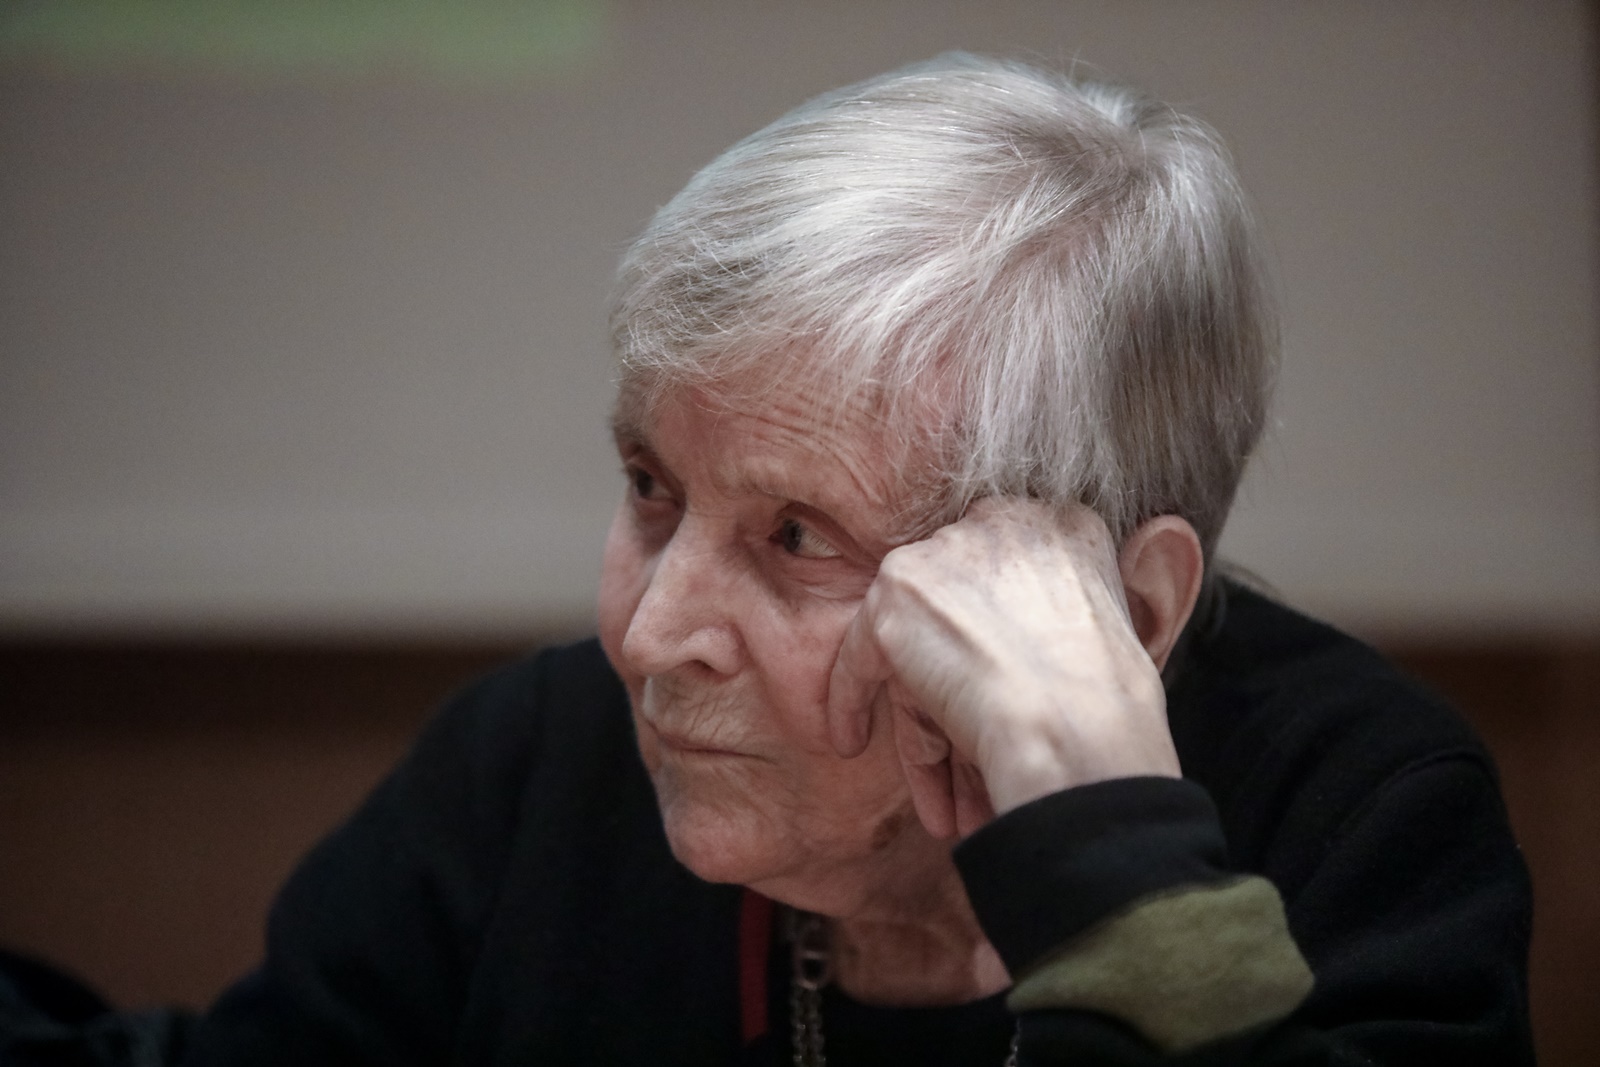 Ελένη Γλύκατζη Αρβελέρ, Ίδρυμα Γουλανδρή: Τιμητική εκδήλωση για τη διακεκριμένη ιστορικό